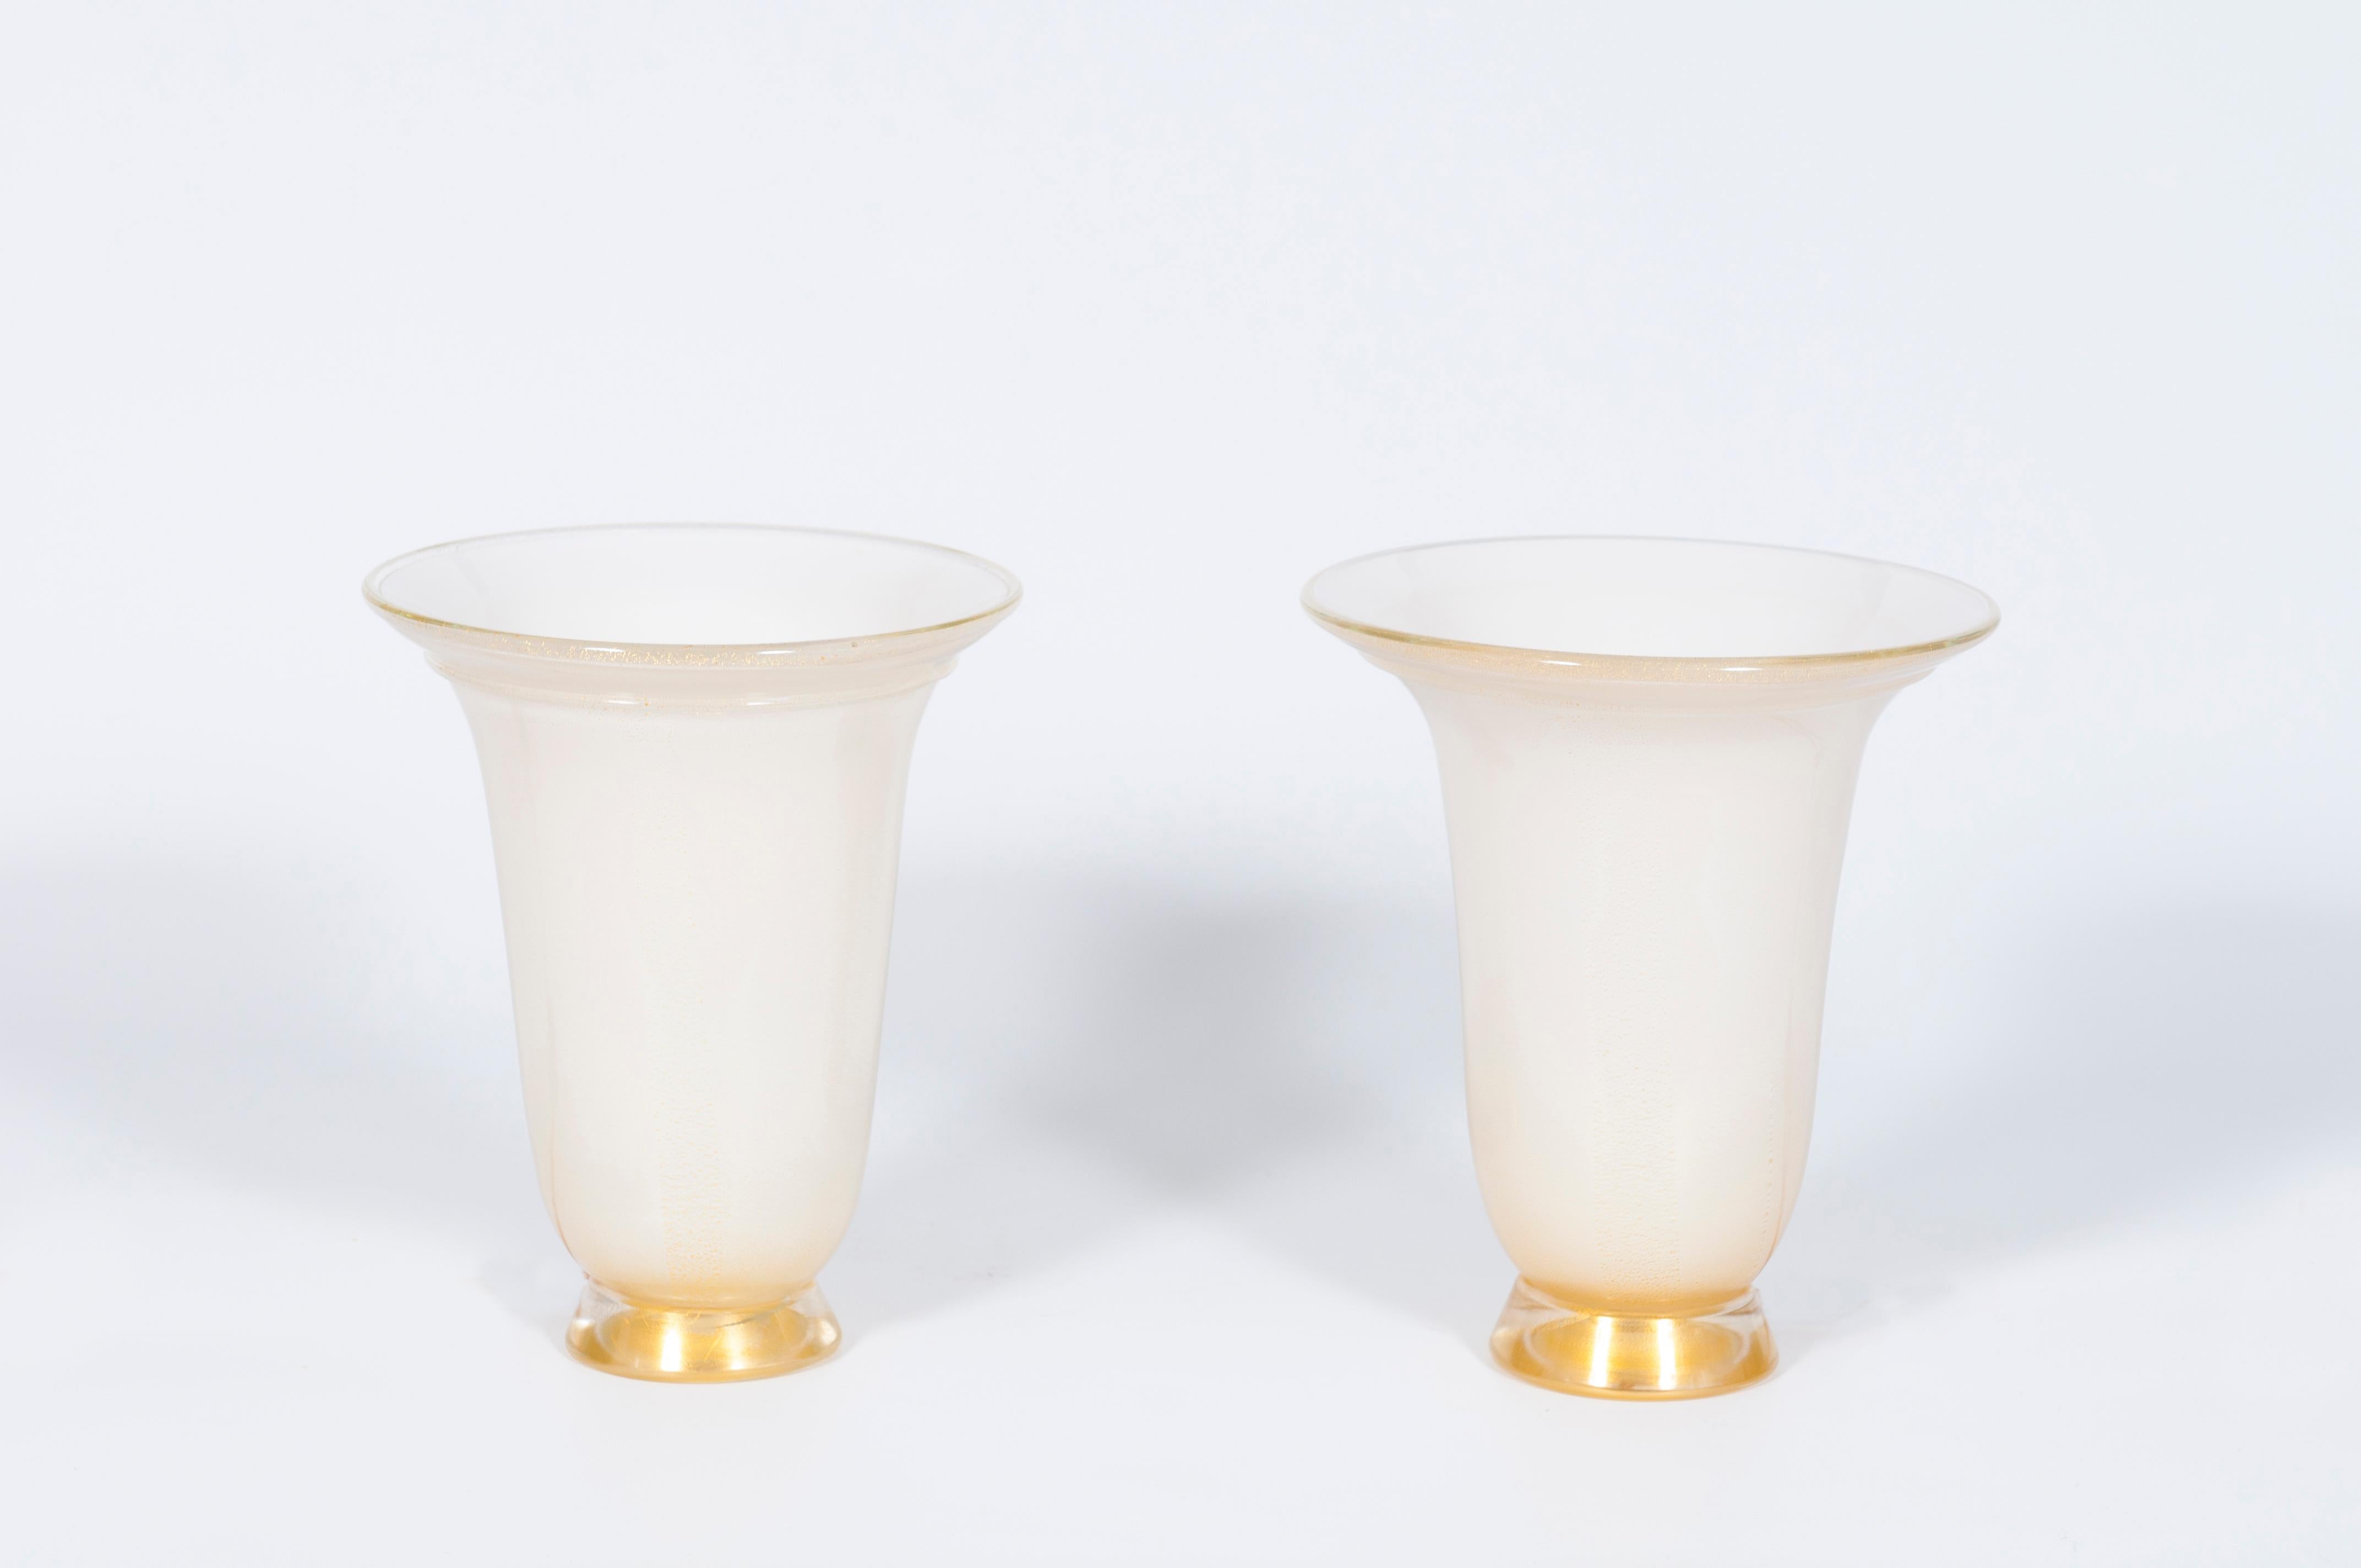 Paar italienische Tischlampen aus geblasenem venezianischem Murano-Glas, weiß und gold, Barovier zugeschrieben, 1980er Jahre.
Dies ist ein einzigartiges Set von mundgeblasenem Murano-Glas Tischlampen in Form einer Vase, Milch-weiße Farbe mit einer